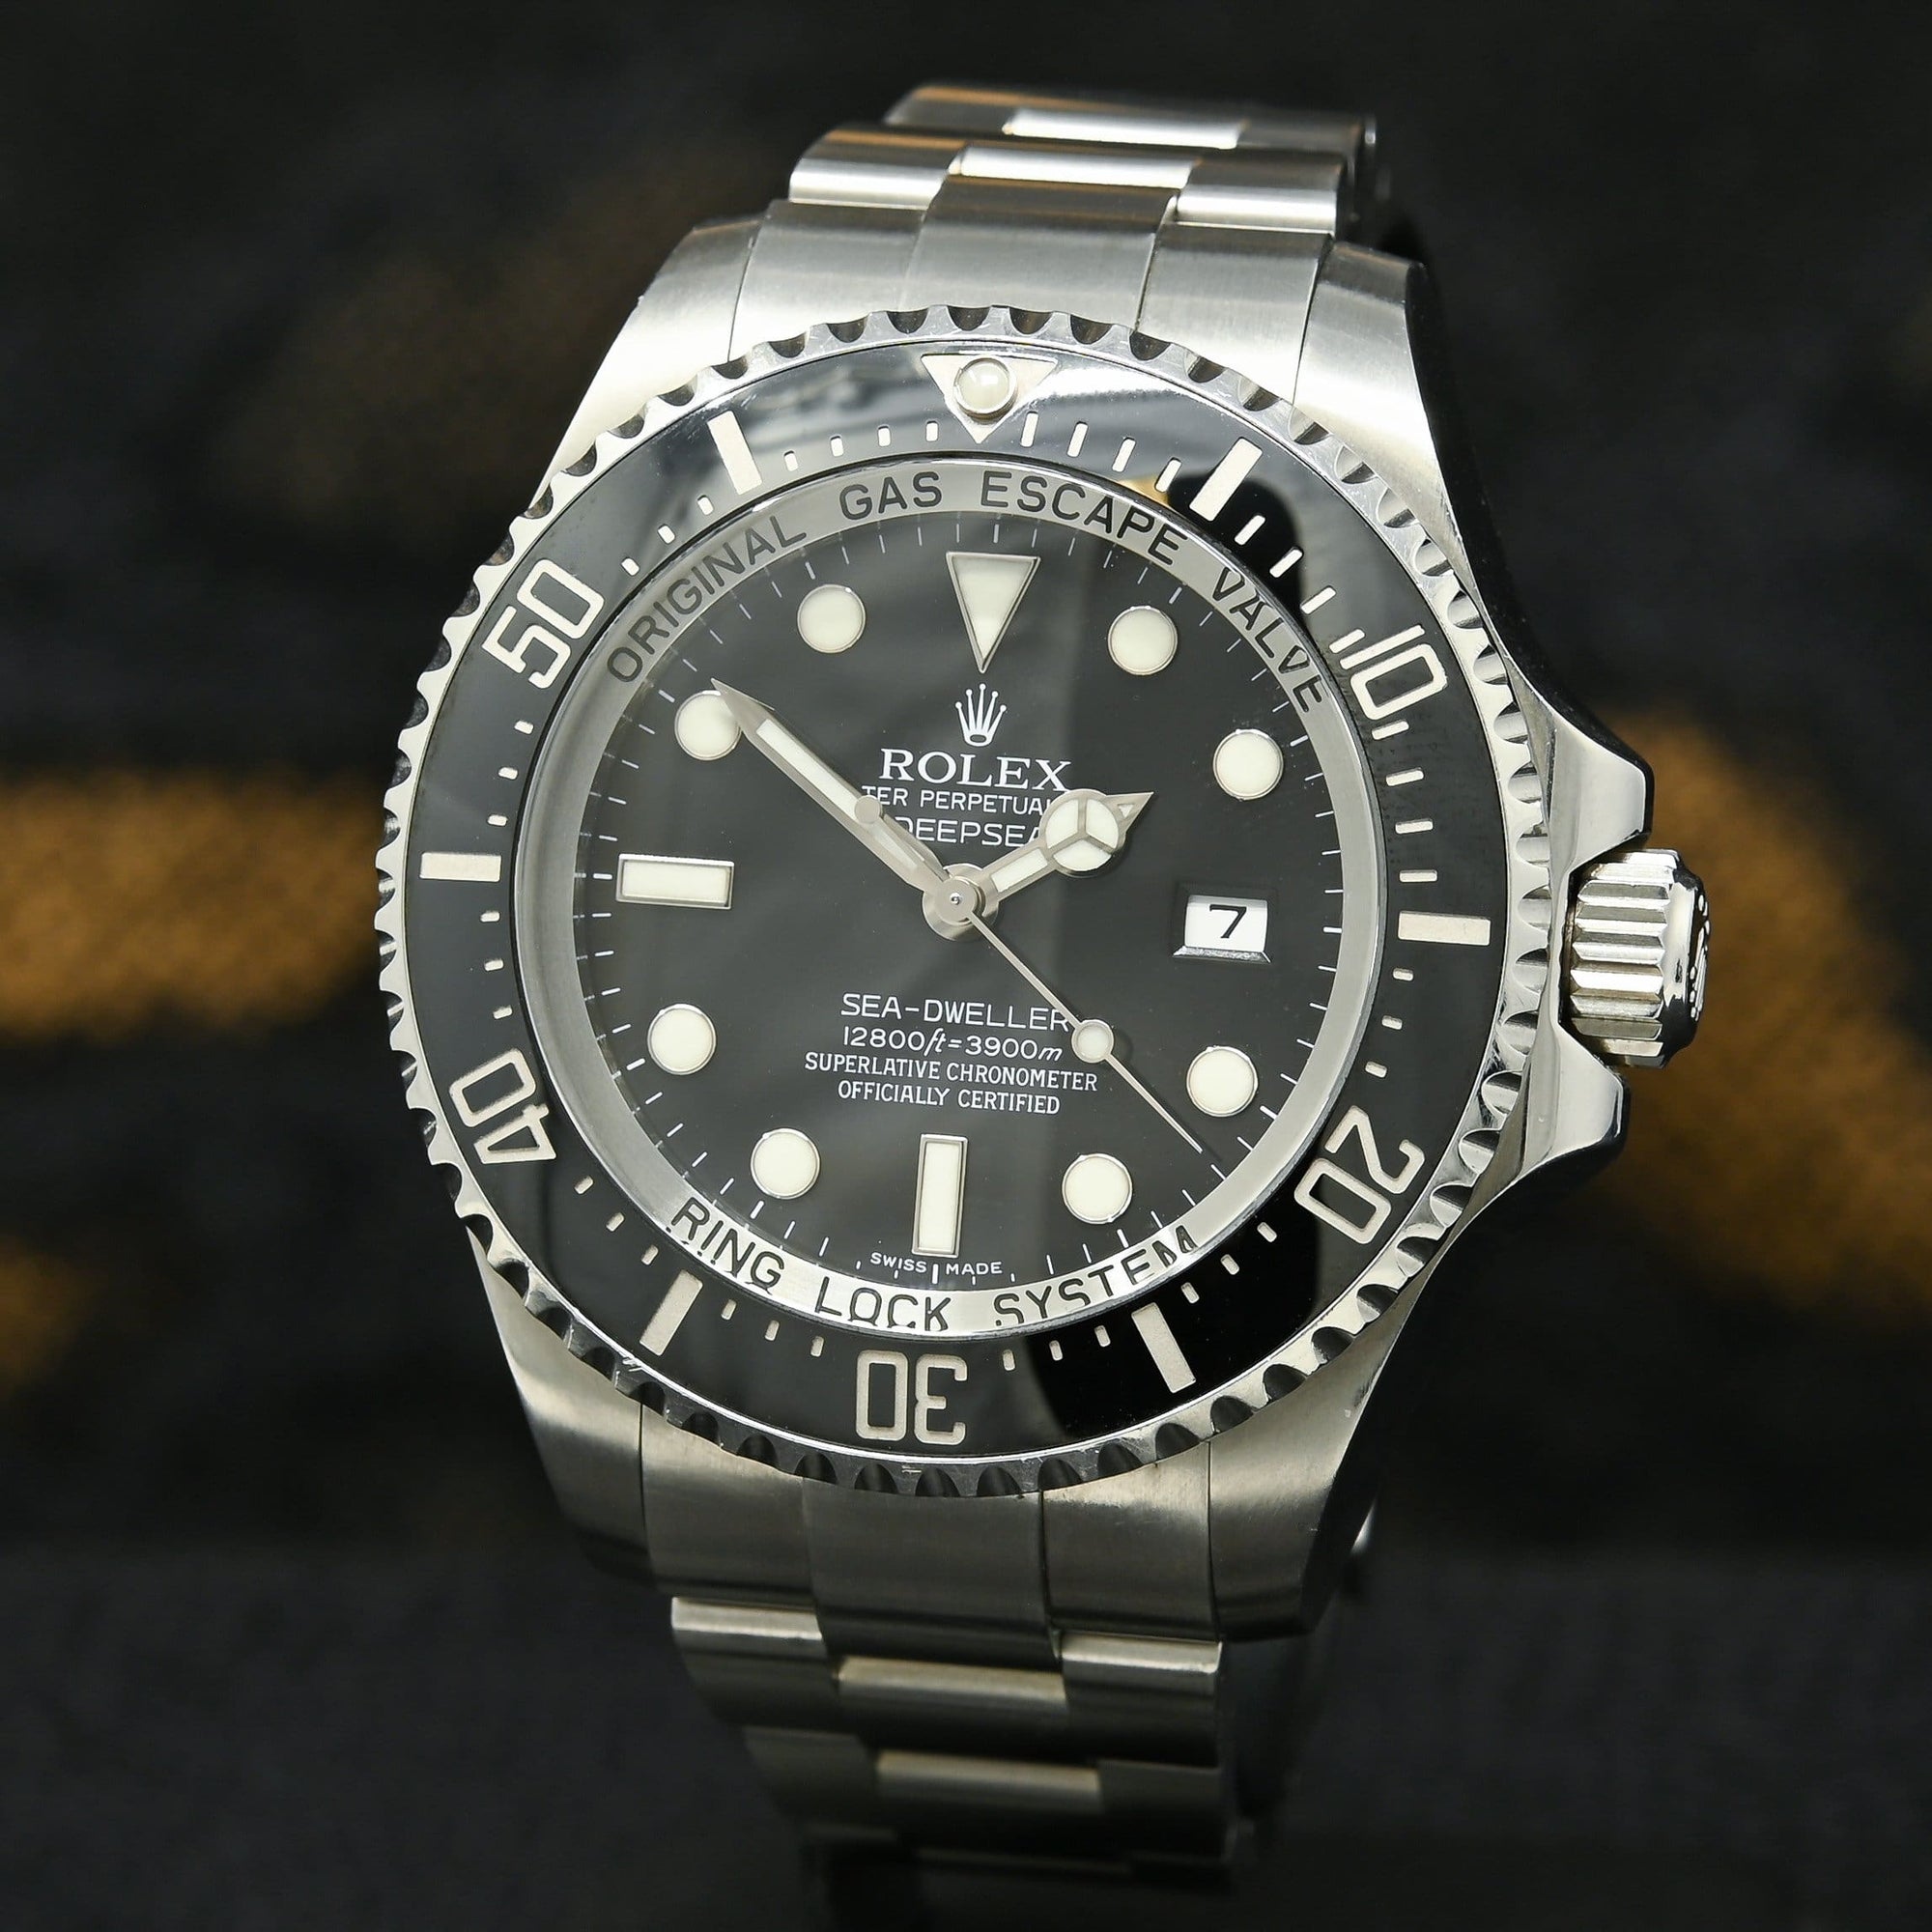 Rolex watch | Rolex Sea-Dweller Deepsea Men's Watch 44mm - 116660 Stainless